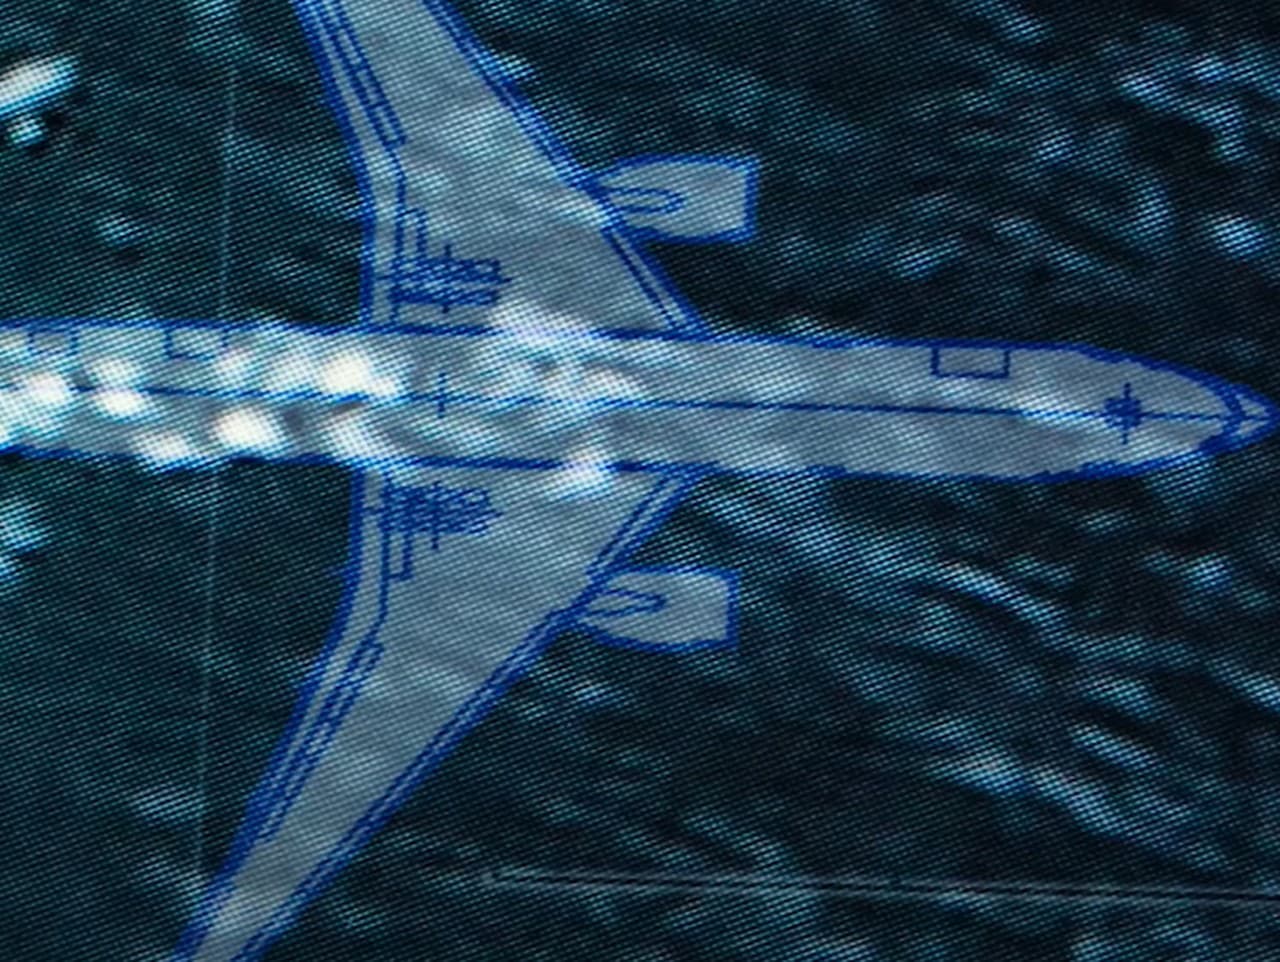 Lietadlo MH370 nečakane zmizlo. Oficiálne správy neposkytli do týchto dní žiadne vysvetlenie tejto záhady. 